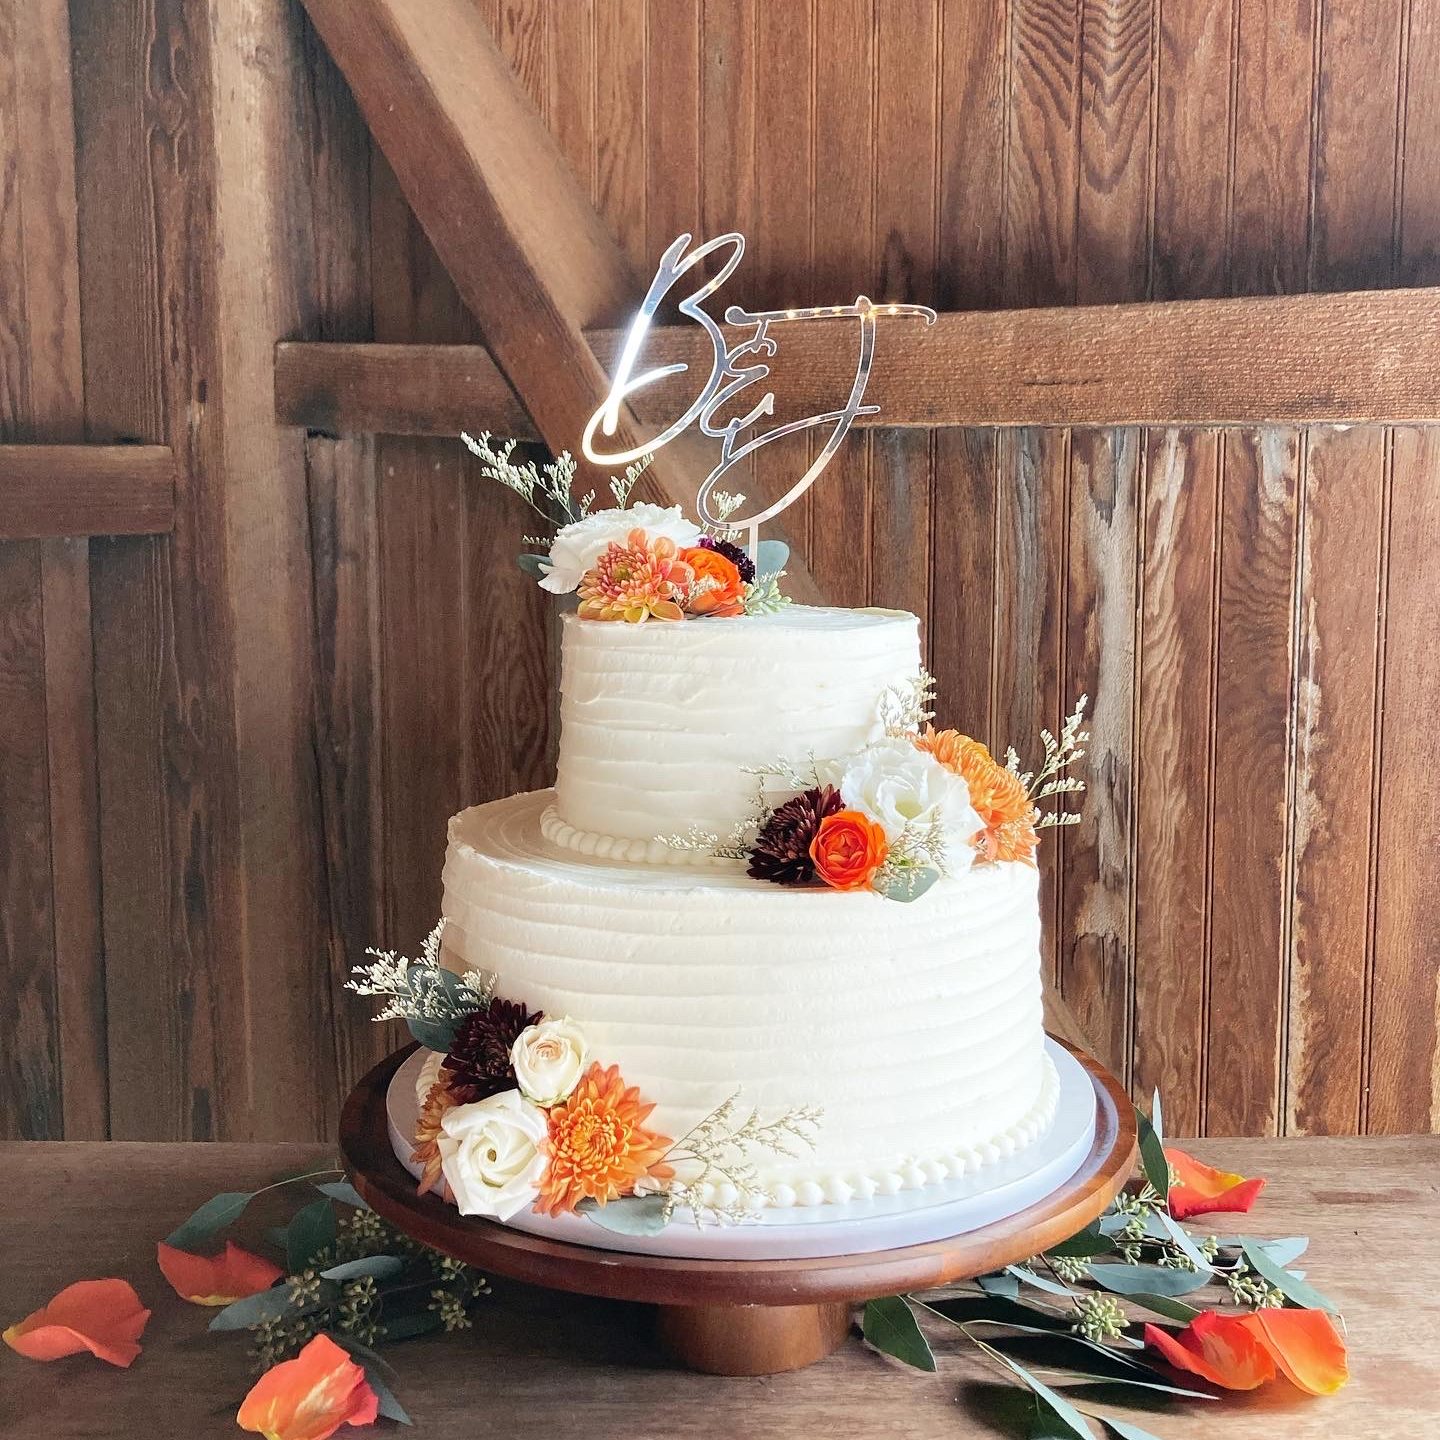 Rustic fresh flower fall wedding cake in a barn